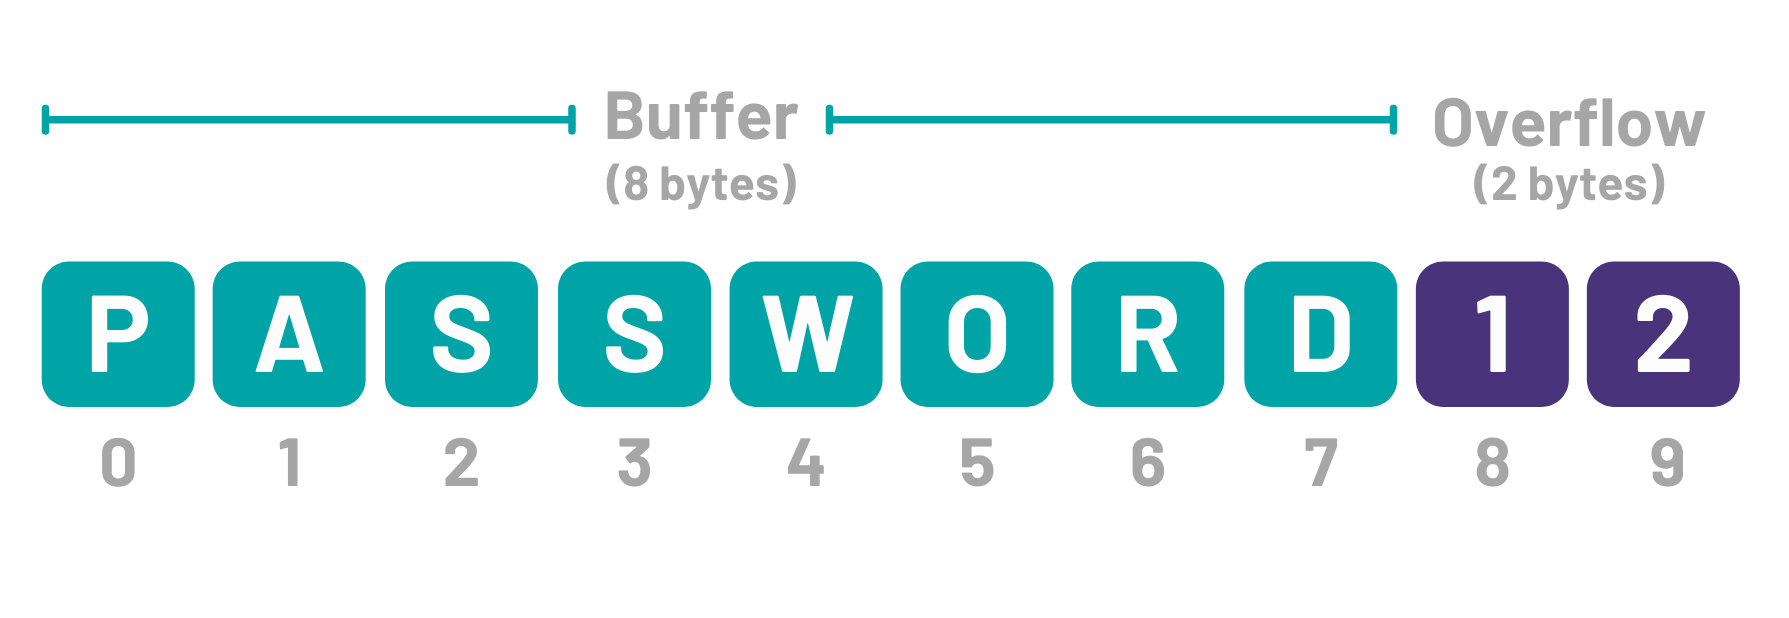 CV-Buffer overflow